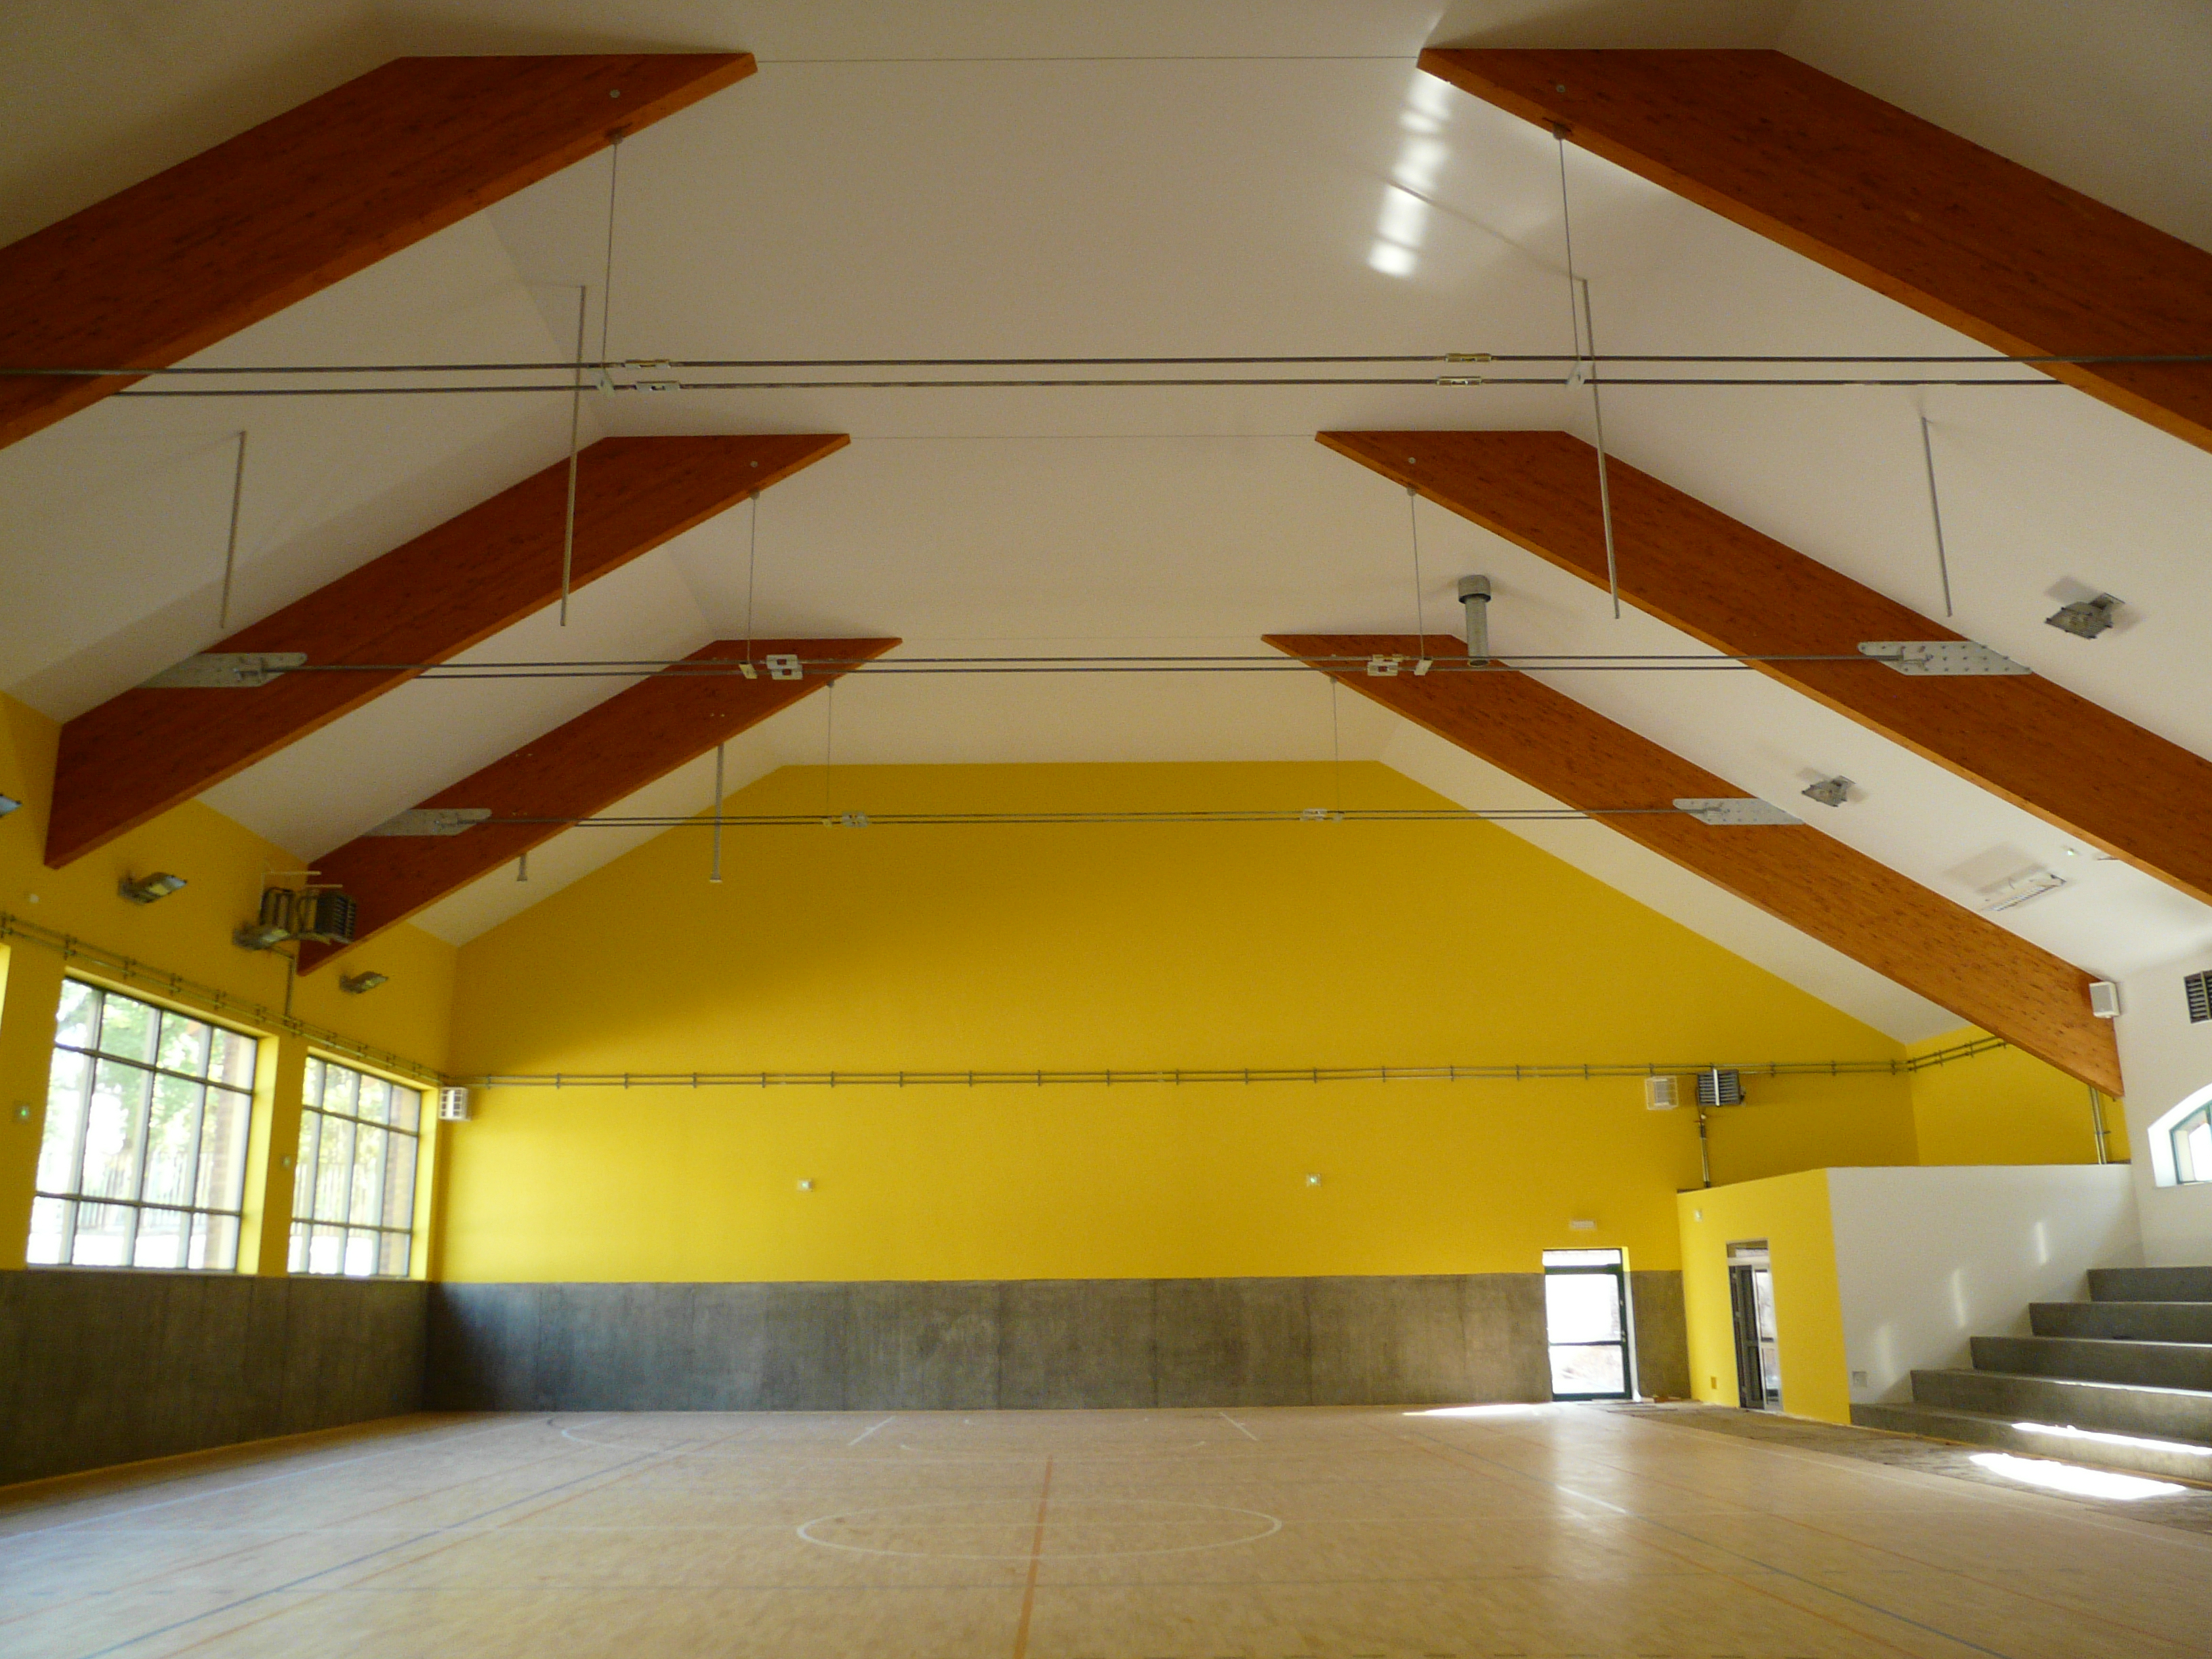 Sala gimnastyczna w Rudzie Śląskiej